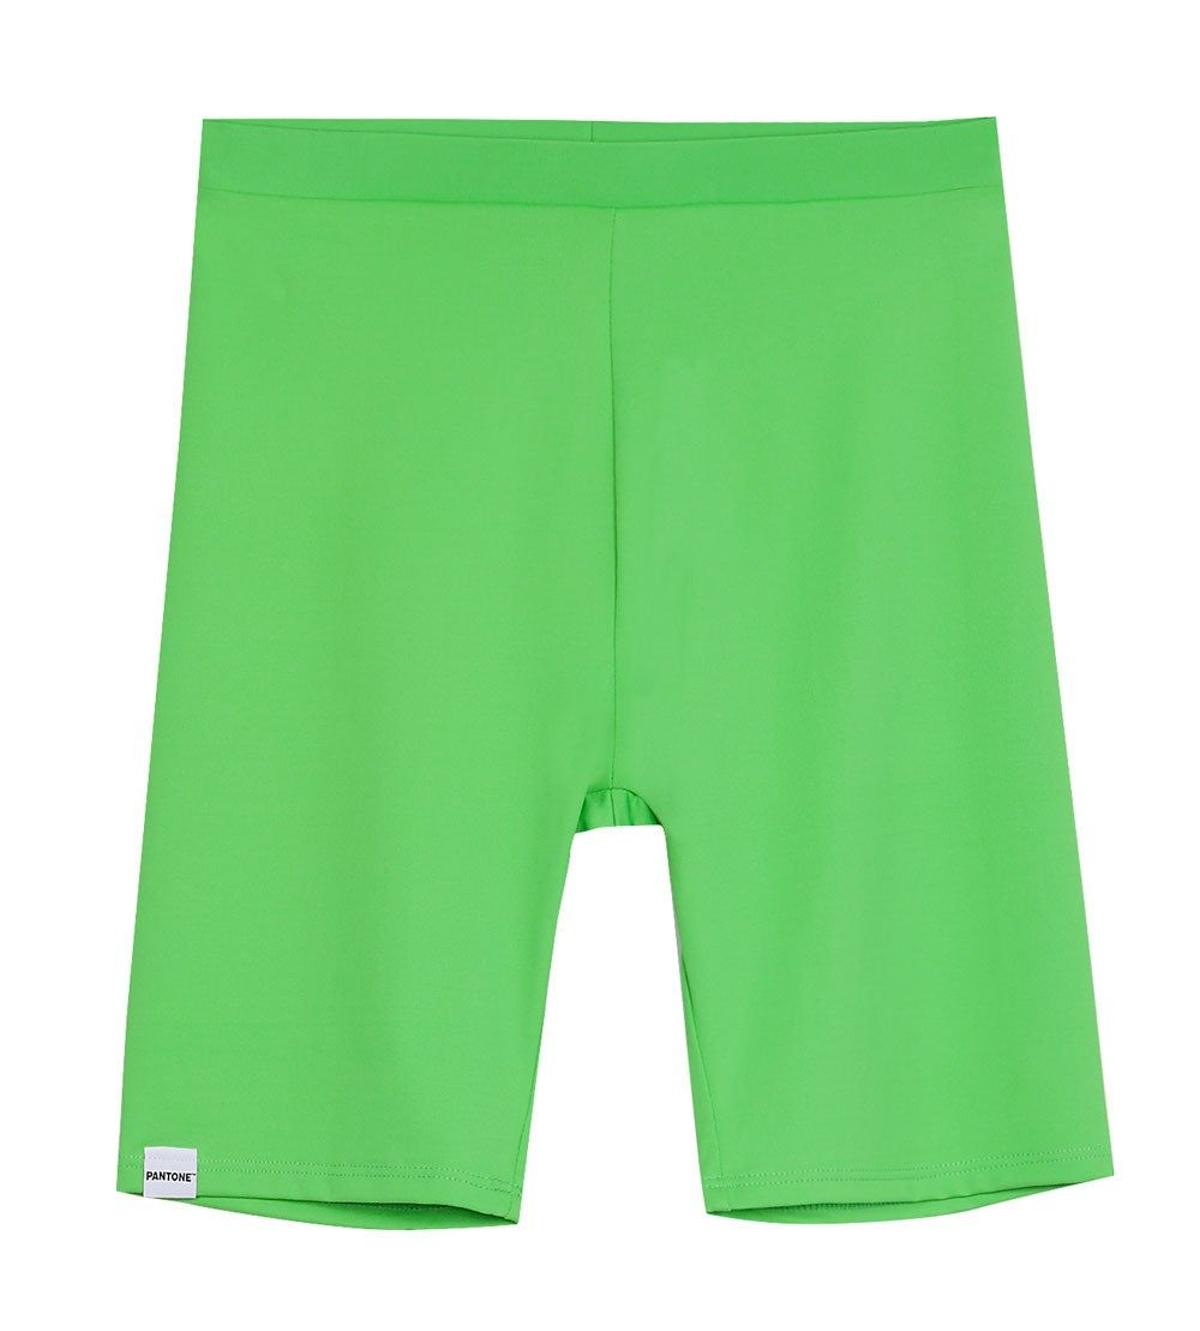 Leggings en color verde de la colección Pantone de Bershka. (Precio: 12, 99 euros)